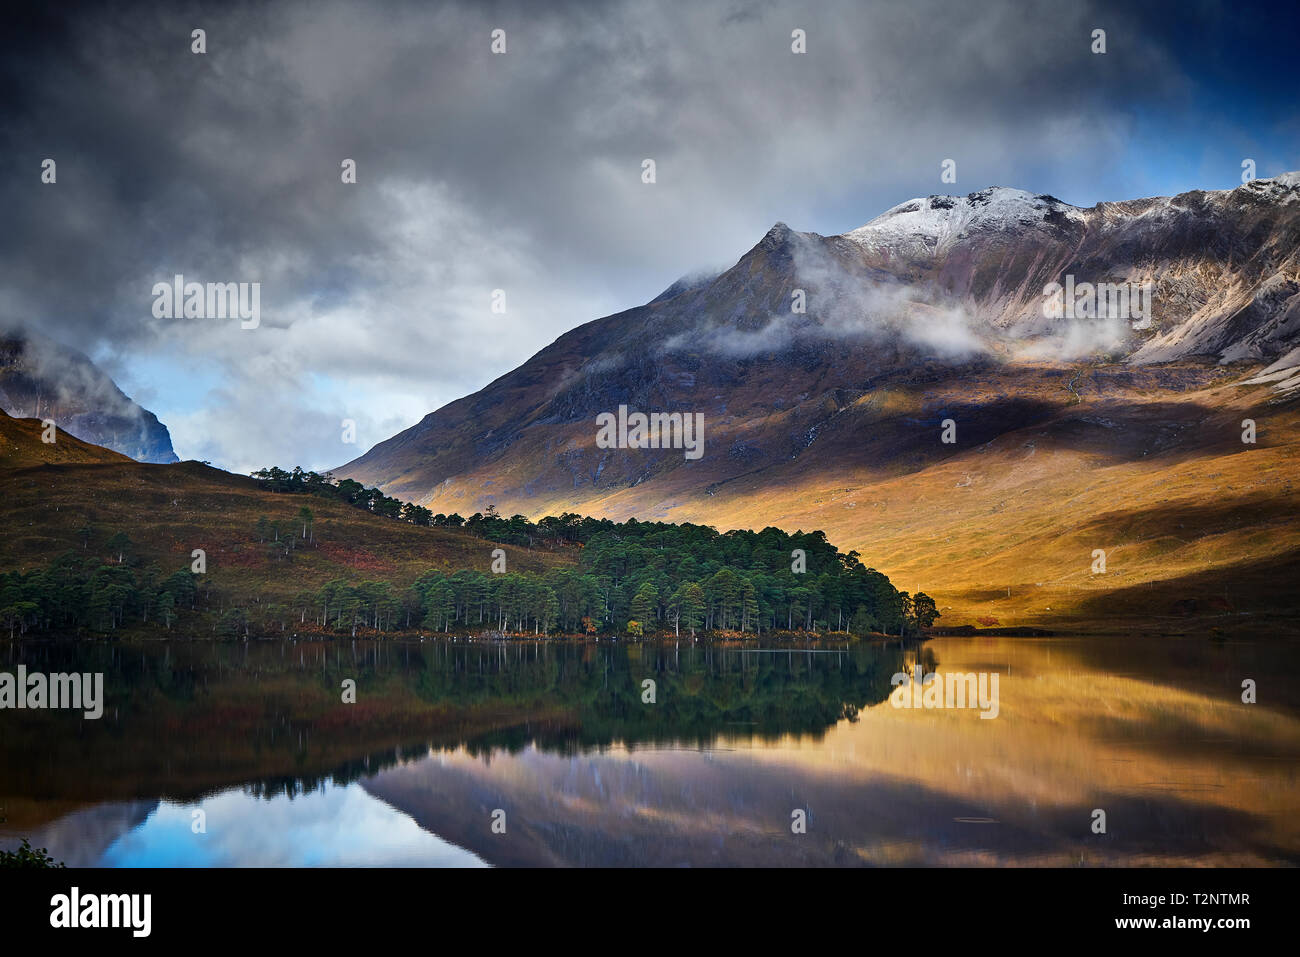 Tranquil mountain landscape mirror imaged in loch, Achnasheen, Scottish Highlands, Scotland Stock Photo